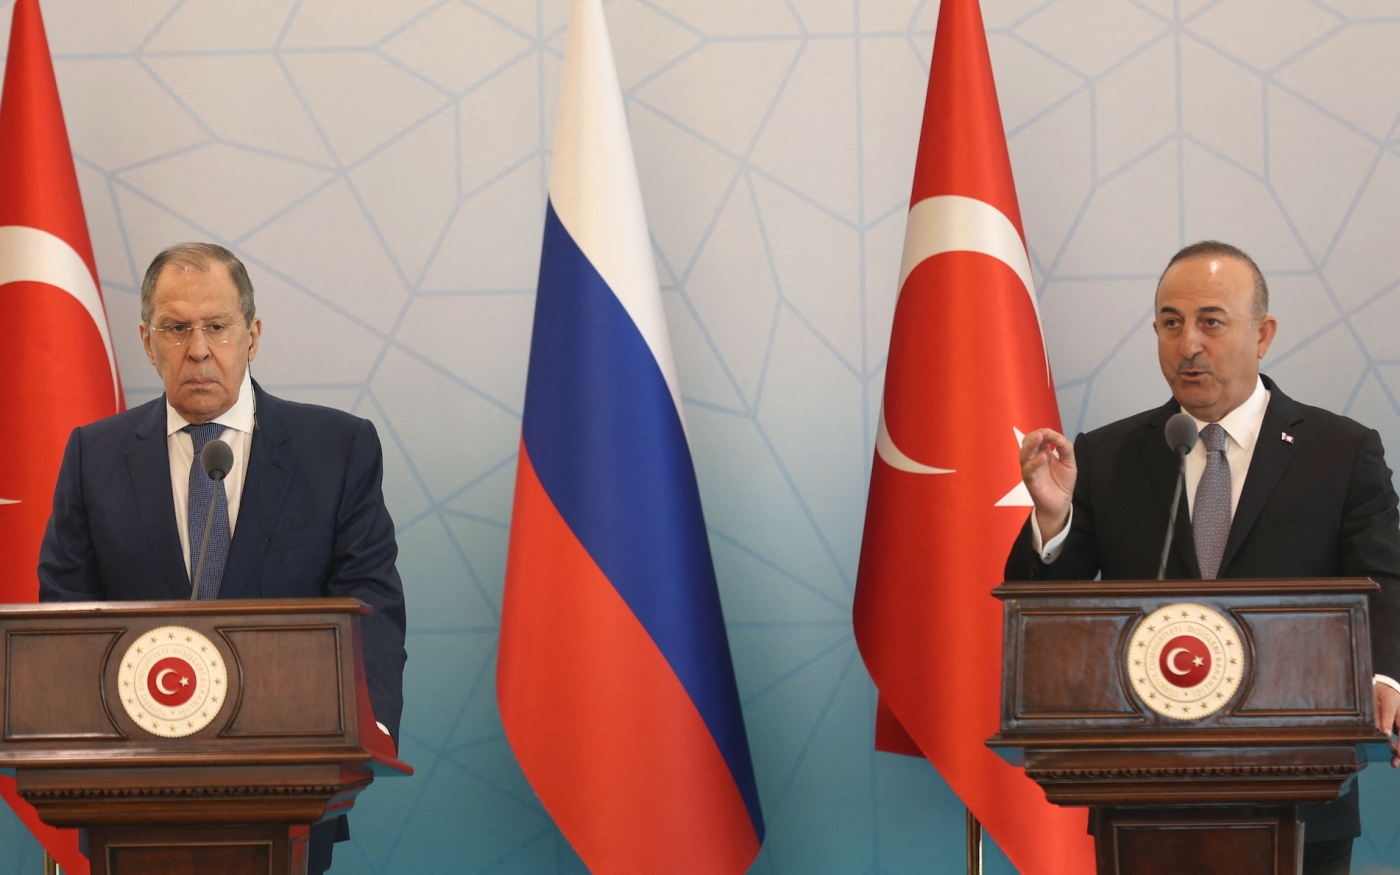 Le ministre russe des Affaires étrangères Sergueï Lavrov (à gauche) et le ministre turc des Affaires étrangères Mevlüt Çavuşoğlu (à droite) assistent à une conférence de presse à Ankara, le 8 juin 2022 (AFP)